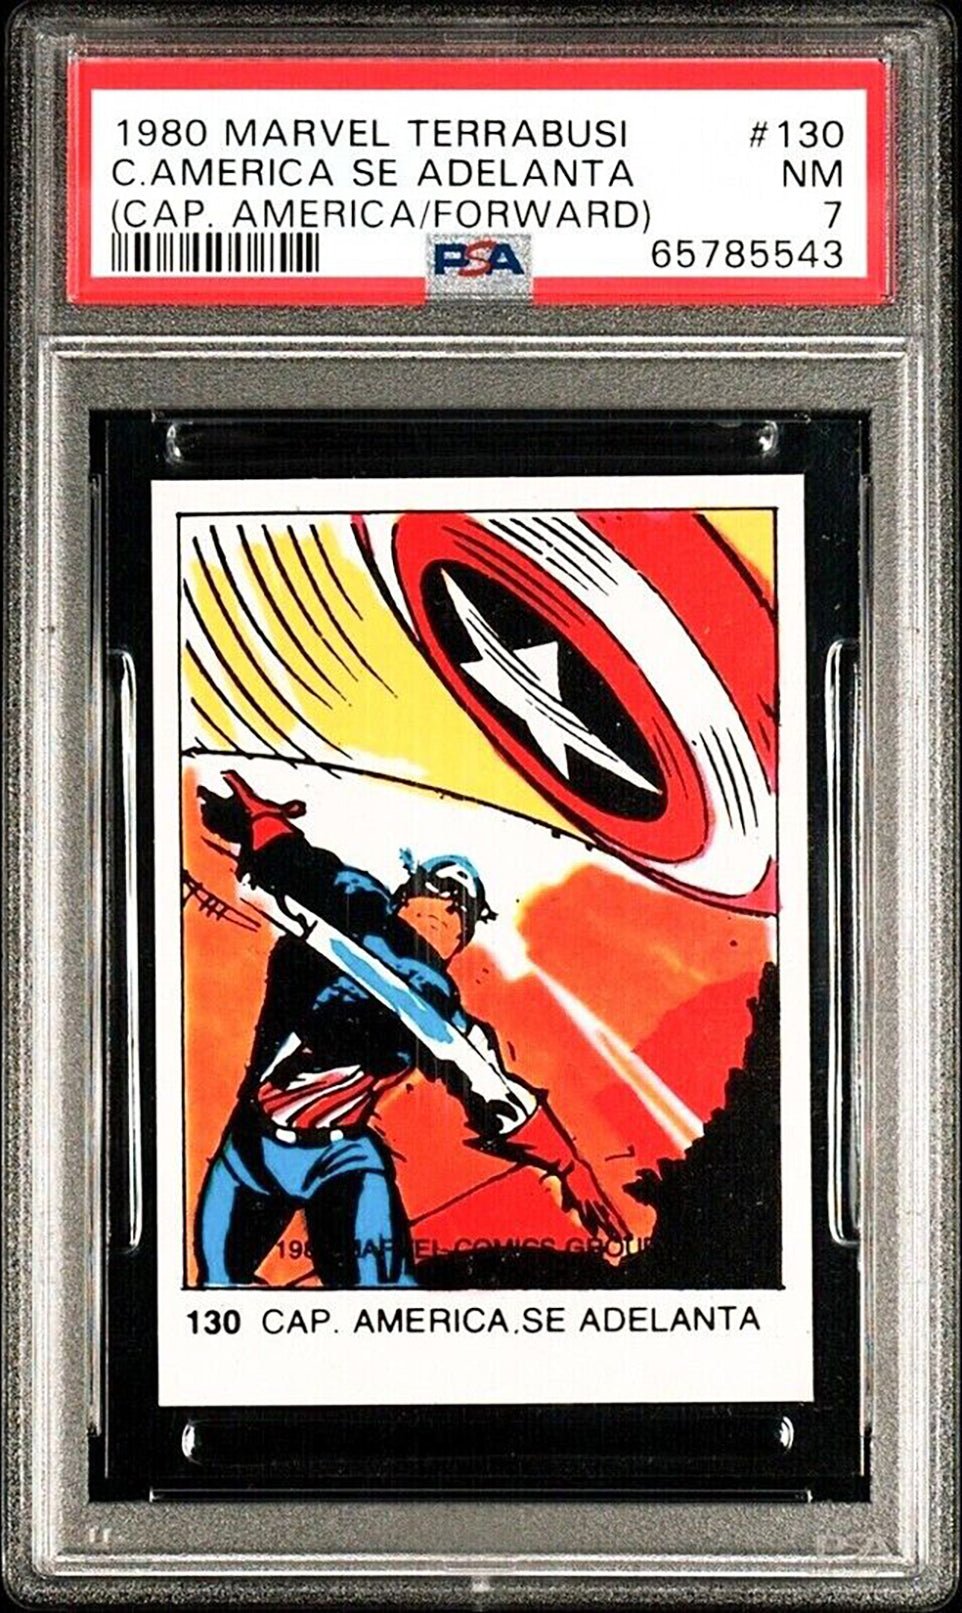 CAPTAIN AMERICA PSA 7 1980 Spanish Marvel Superheroes Terrabusi Insert Card #130 Marvel Graded Cards Insert - Hobby Gems